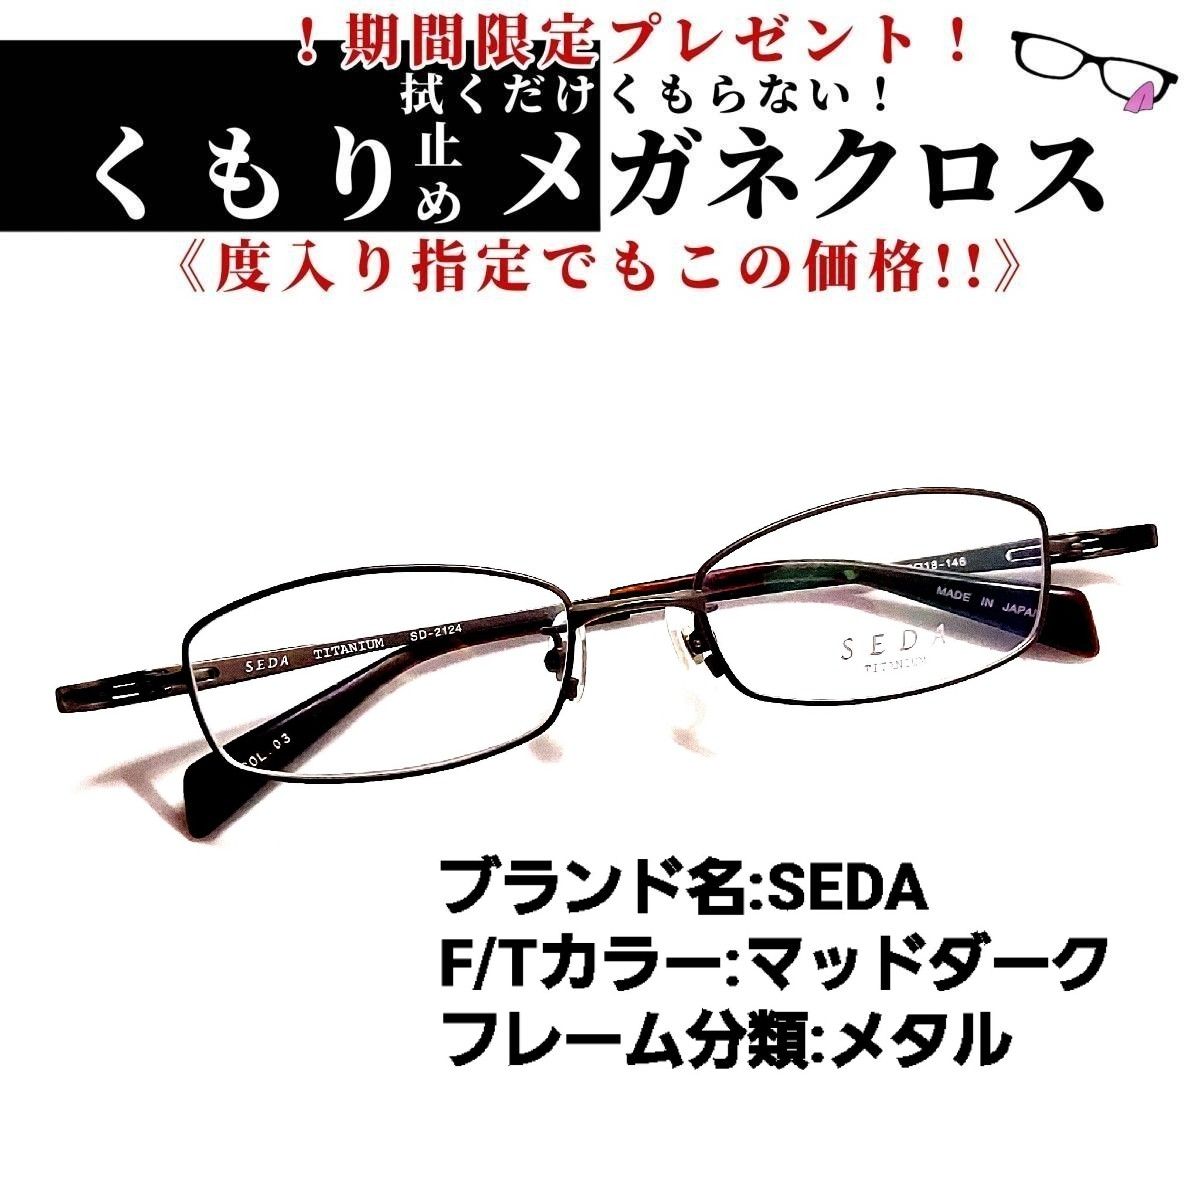 ストライプ デザイン/Striipe design No.1800メガネ TOM FORD【度数